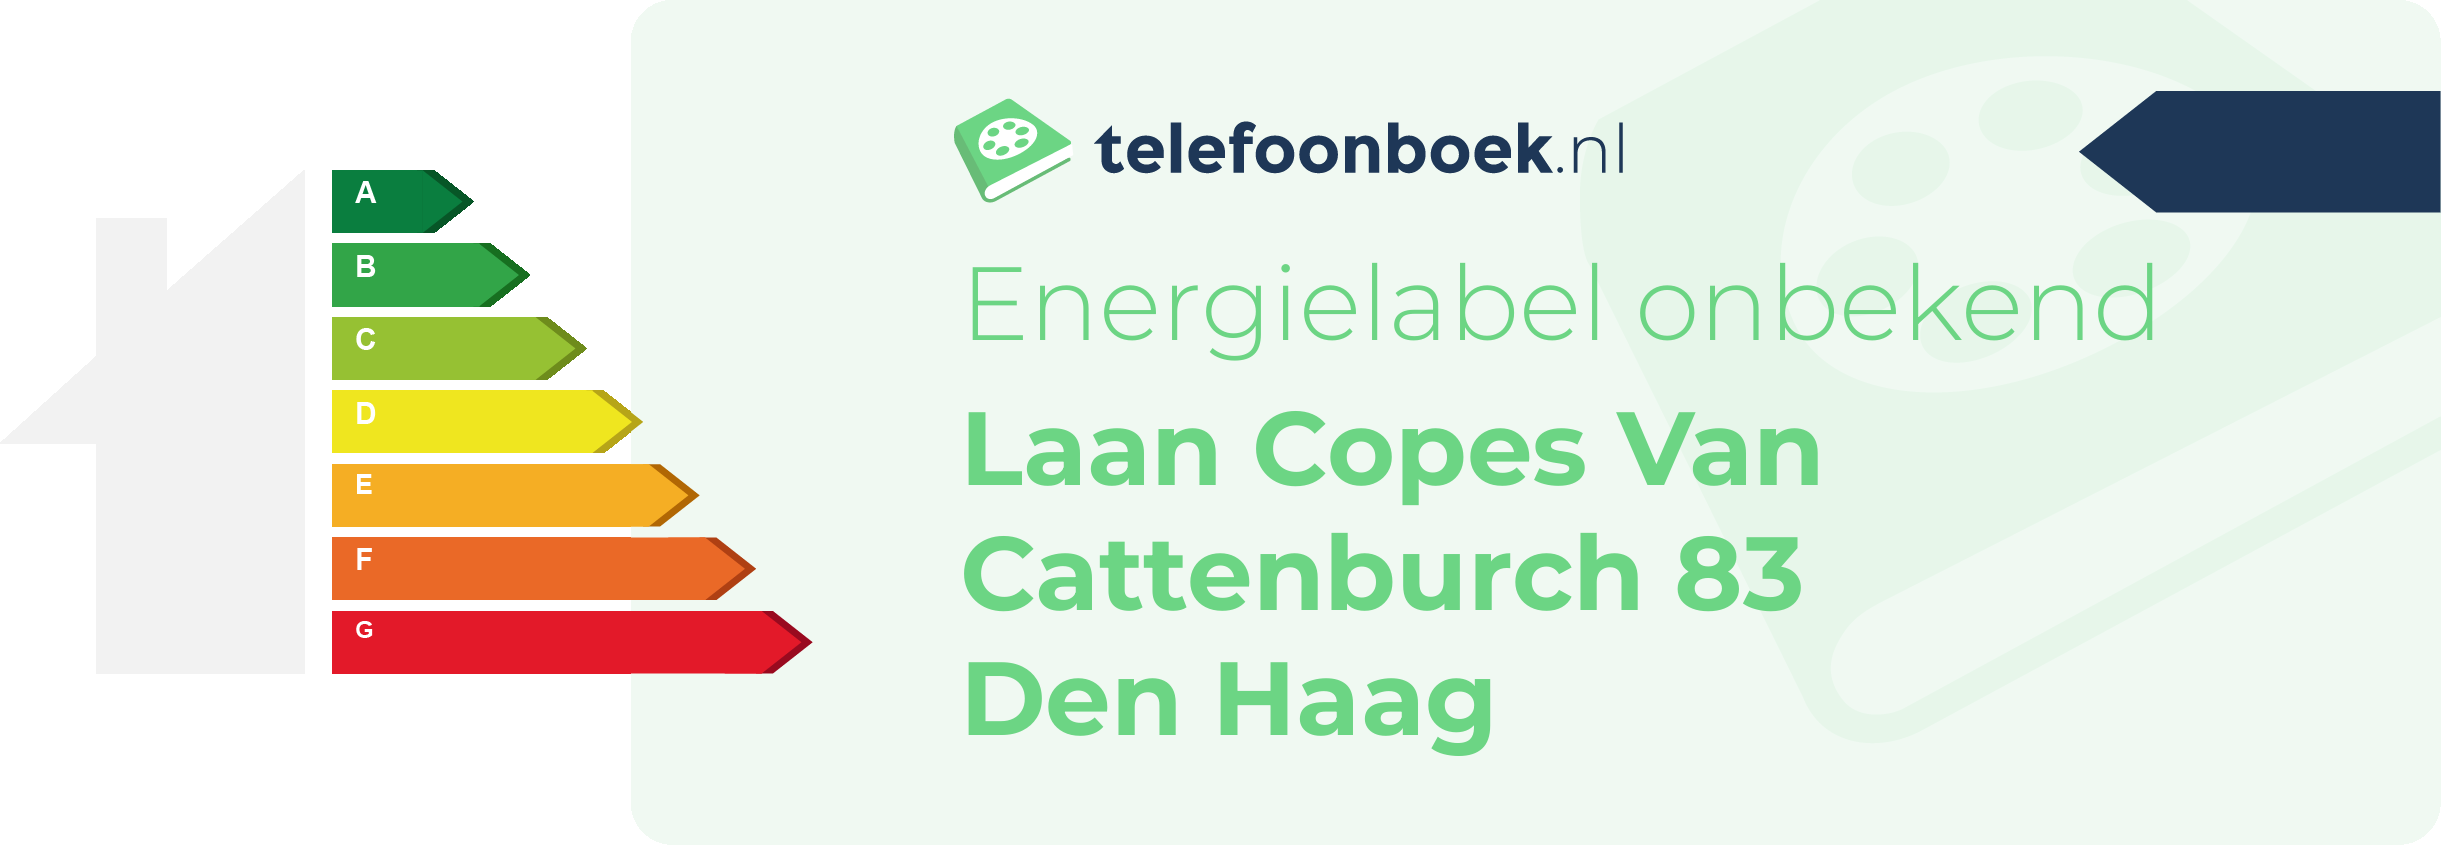 Energielabel Laan Copes Van Cattenburch 83 Den Haag